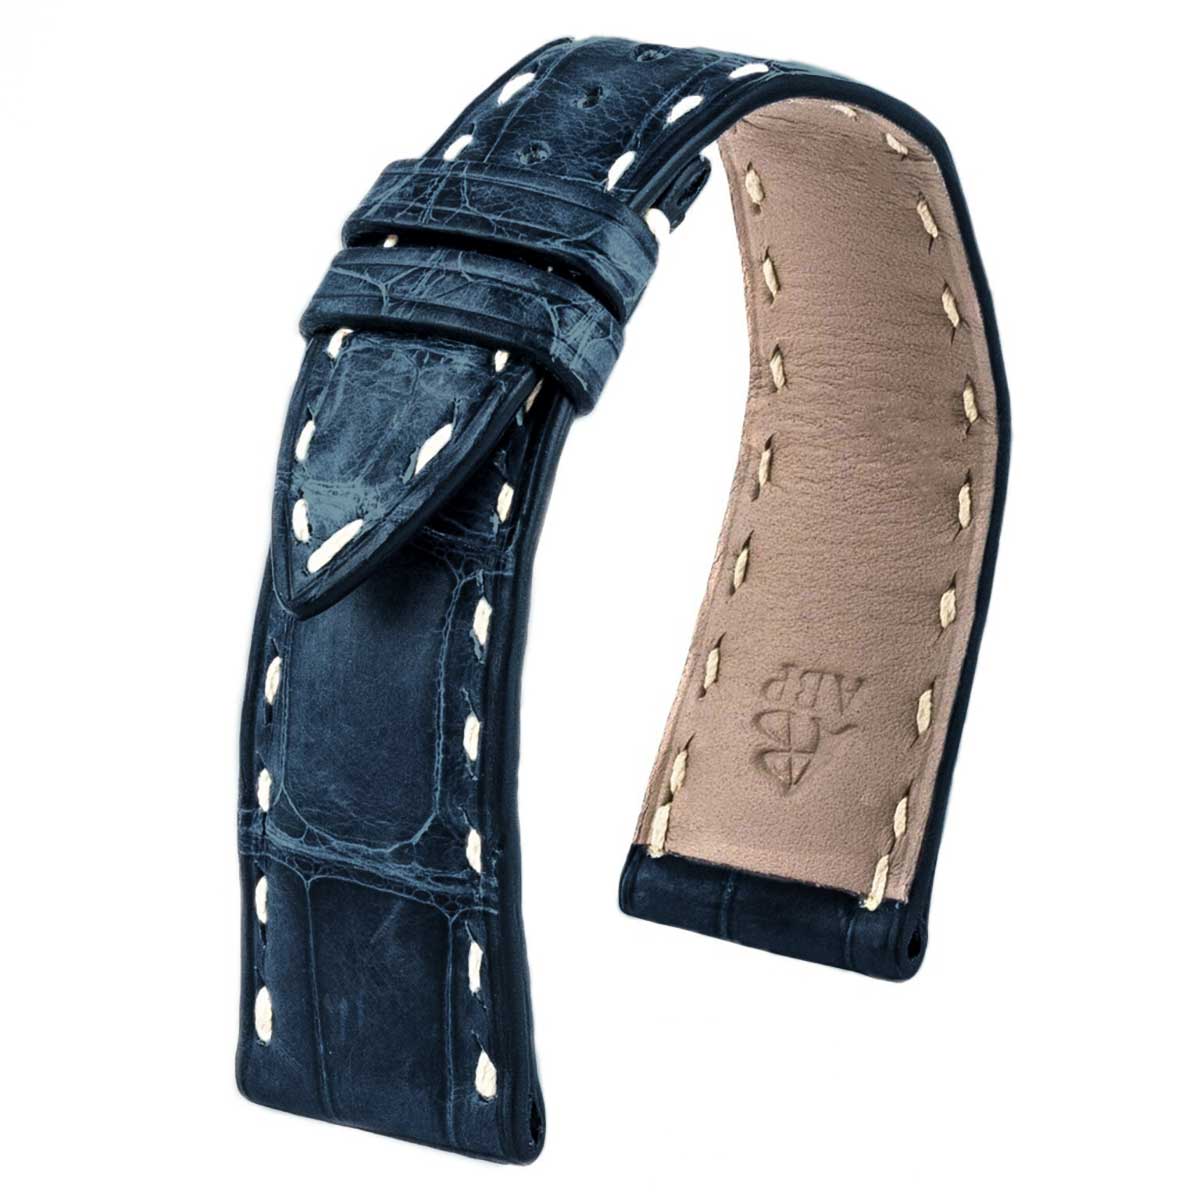 Patek Philippe Calatrava & Complications - Bracelet montre cuir - Alligator tannage spécial waxé (gris / marron / bleu jean) - watch band leather strap - ABP Concept -